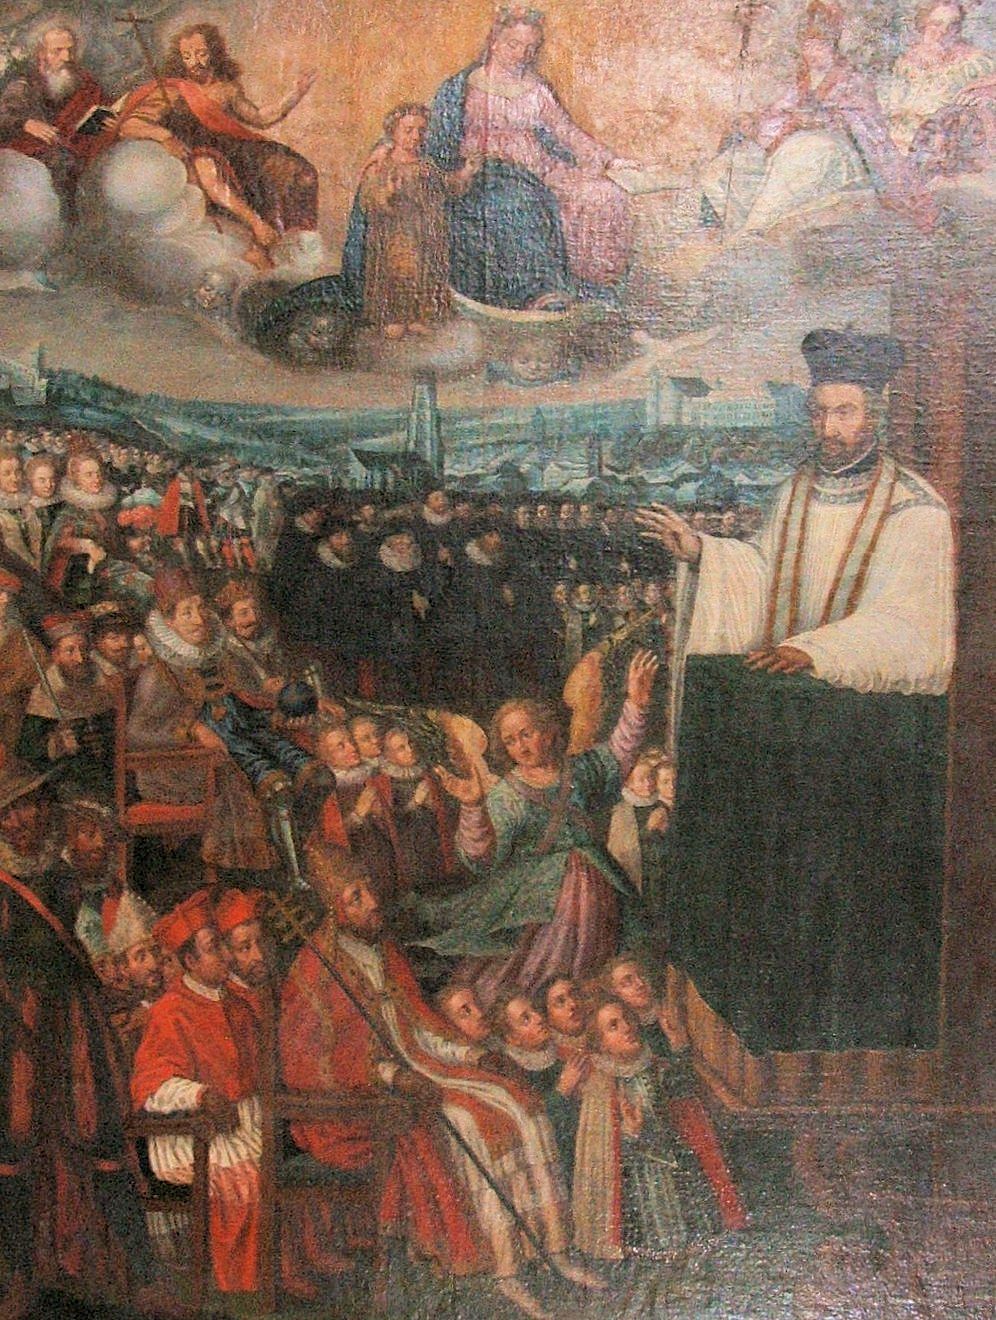 Gemälde in der Kollegiatskirche in Fribourg in der Schweiz: Petrus lehrt in Fribourg, u. a. den Papst